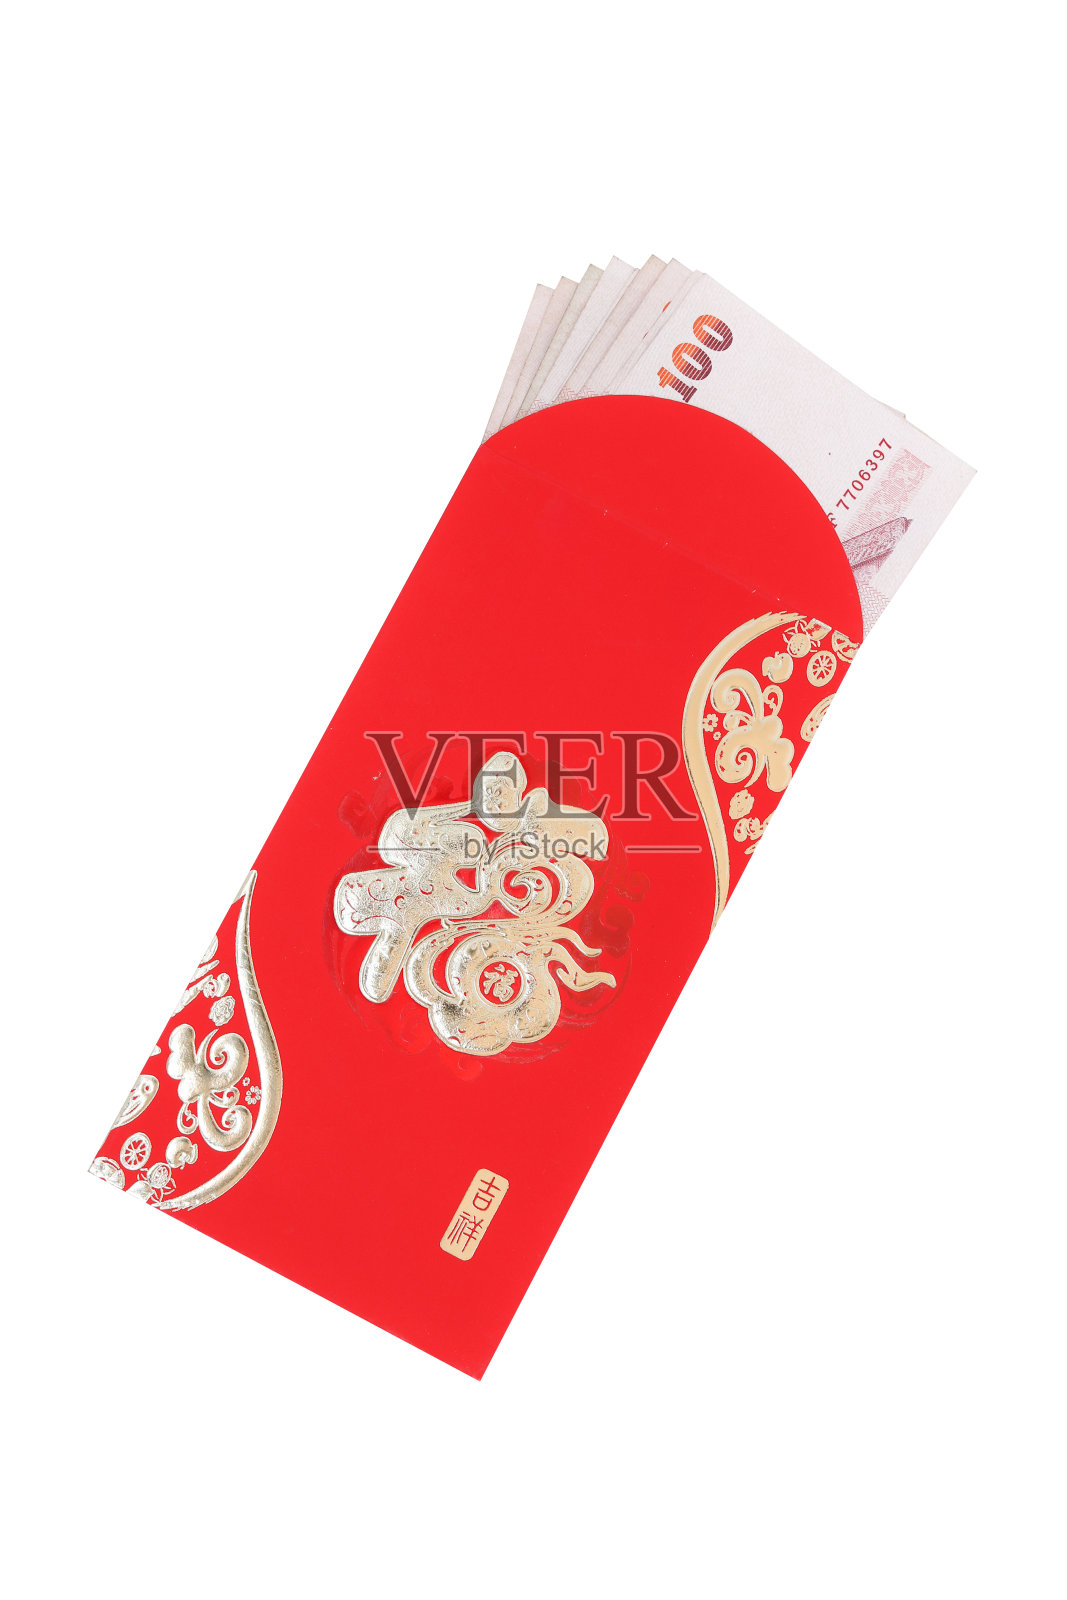 春节的红包和压岁钱照片摄影图片